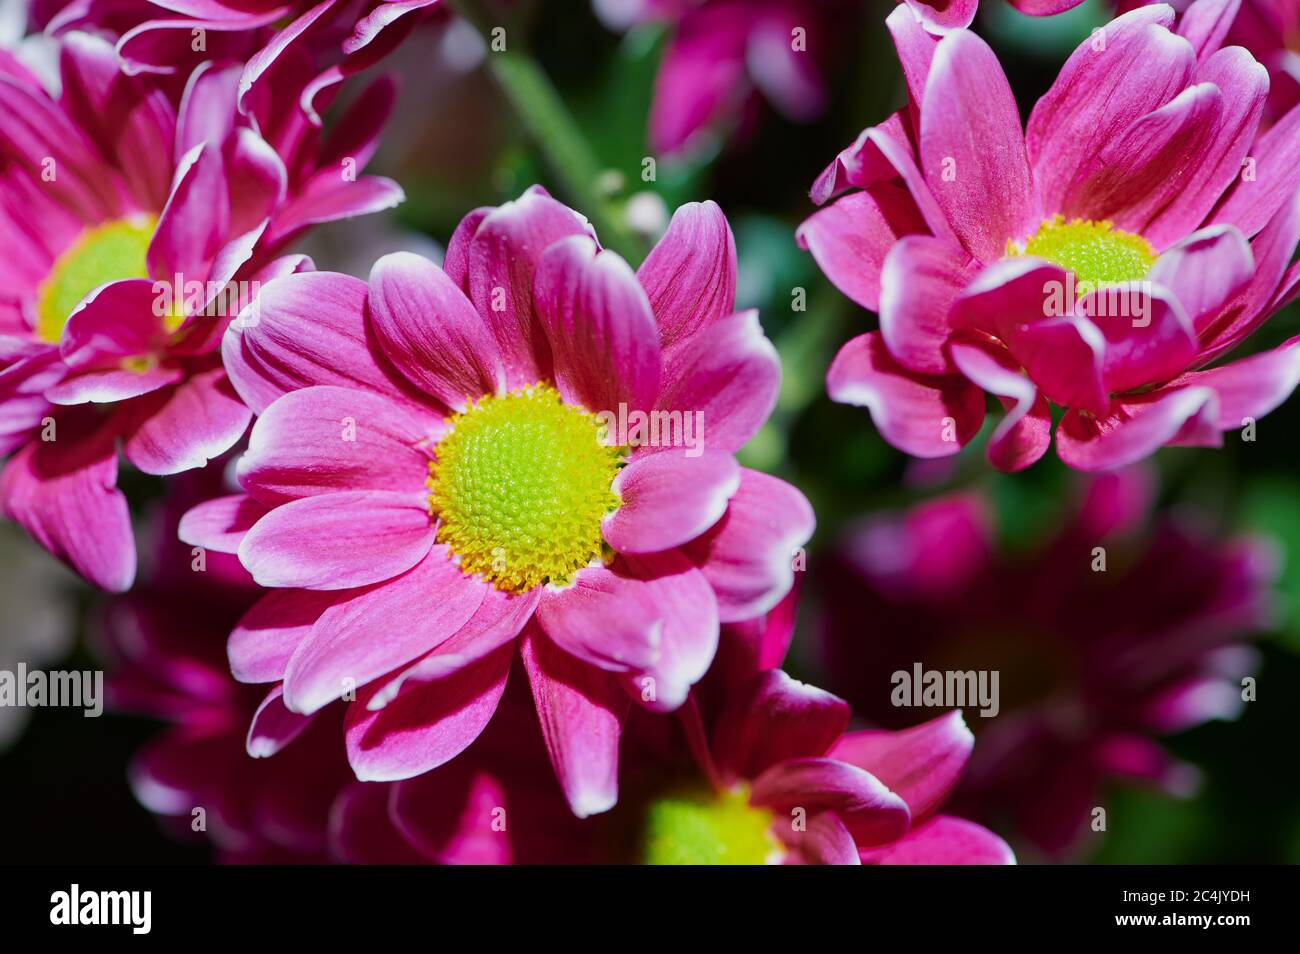 photophotographie macro de chrysanthèmes roses, photo couleur vive Banque D'Images